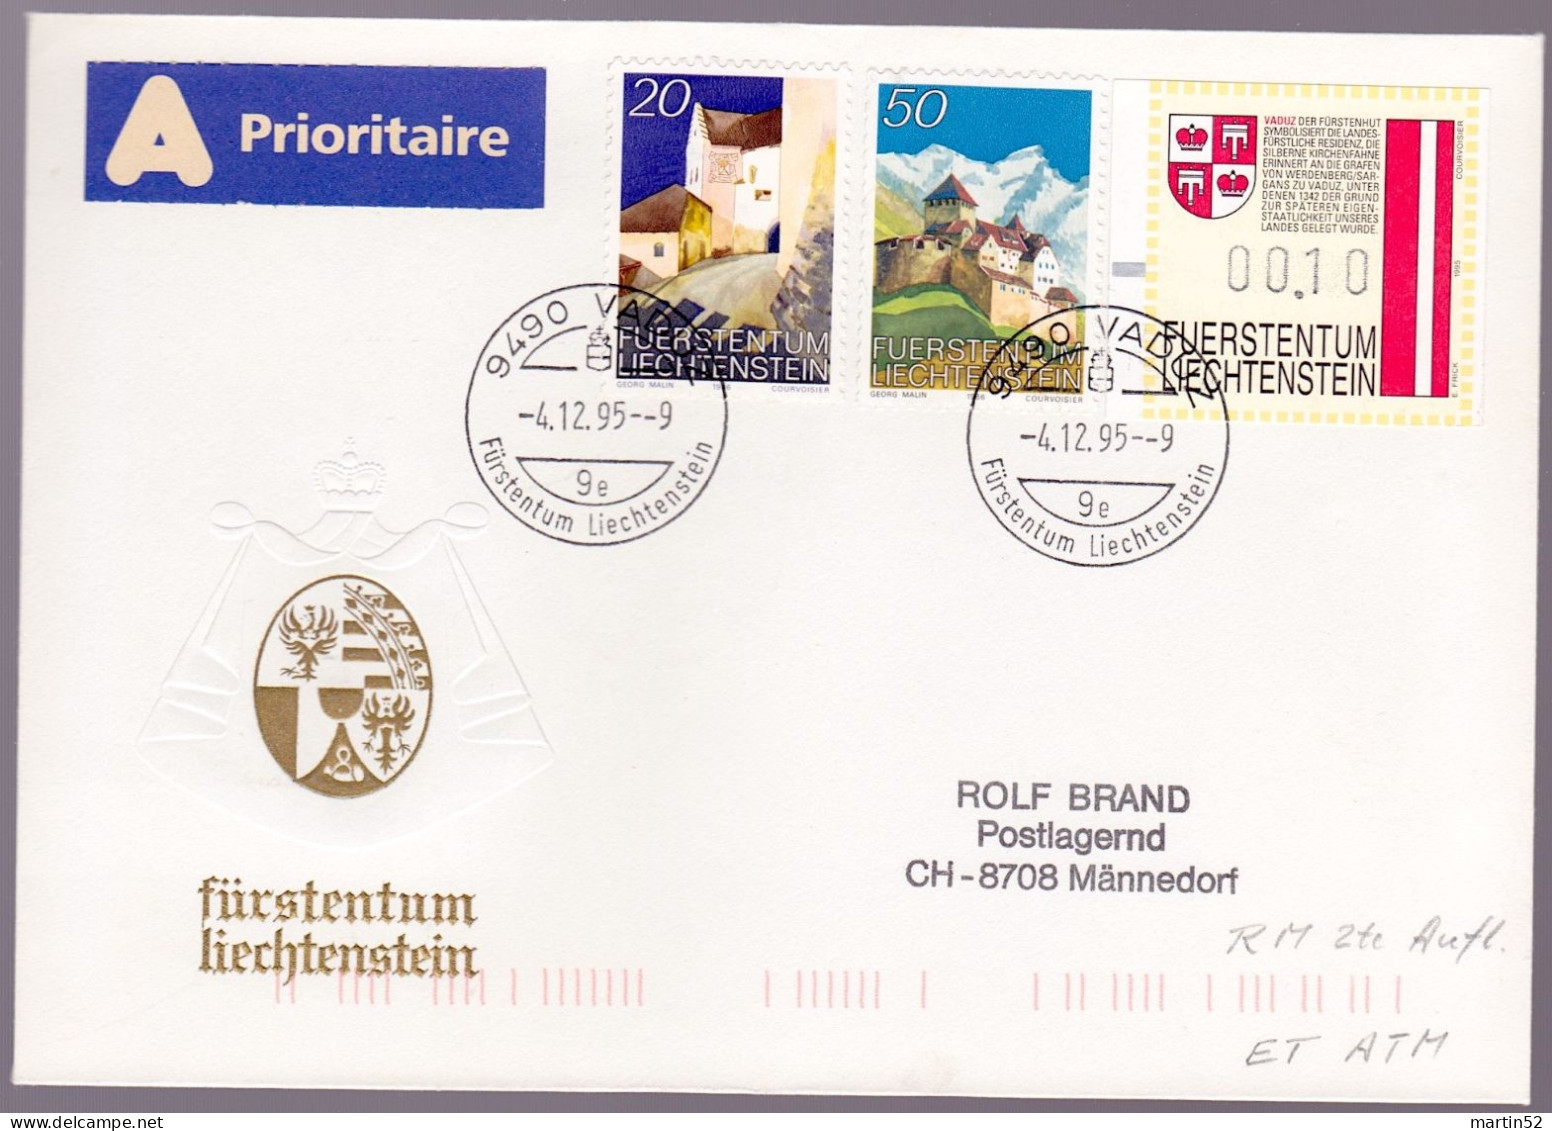 Liechtenstein 1995: Rollenmarken Rouleaux Coil-stamps Zu 836-837R Mi 896-897 Yv 837-838 + ATM Mit O VADUZ 4.12.96 - Plaatfouten